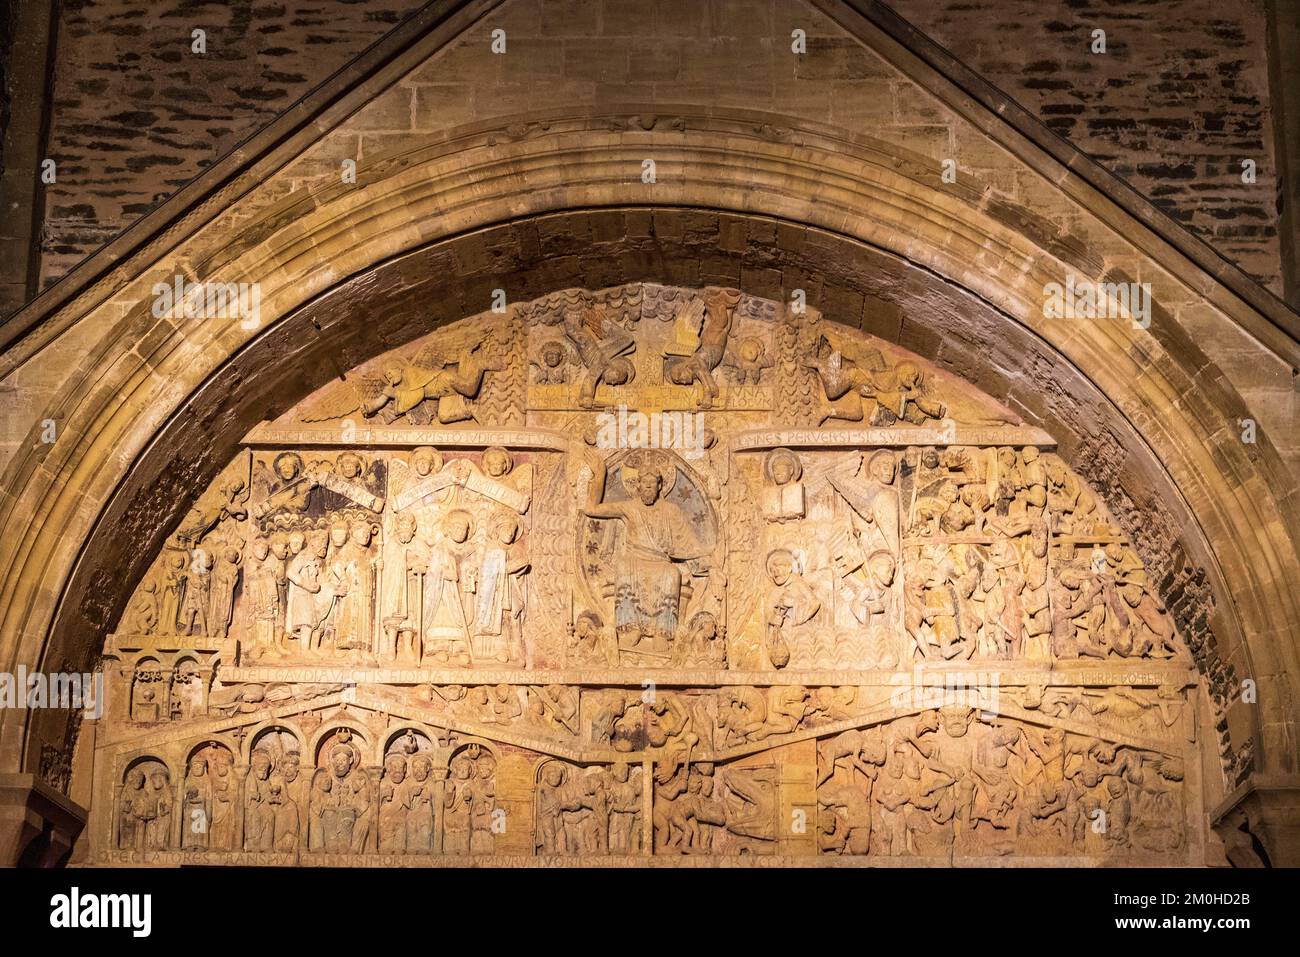 Frankreich, Aveyron, Conques, eines der schönsten Dörfer Frankreichs, Bühne auf dem Weg nach Compostela, romanische Abteikirche Sainte Foy, UNESCO-Weltkulturerbe, beleuchtetes Tympanum des letzten Gerichts Stockfoto